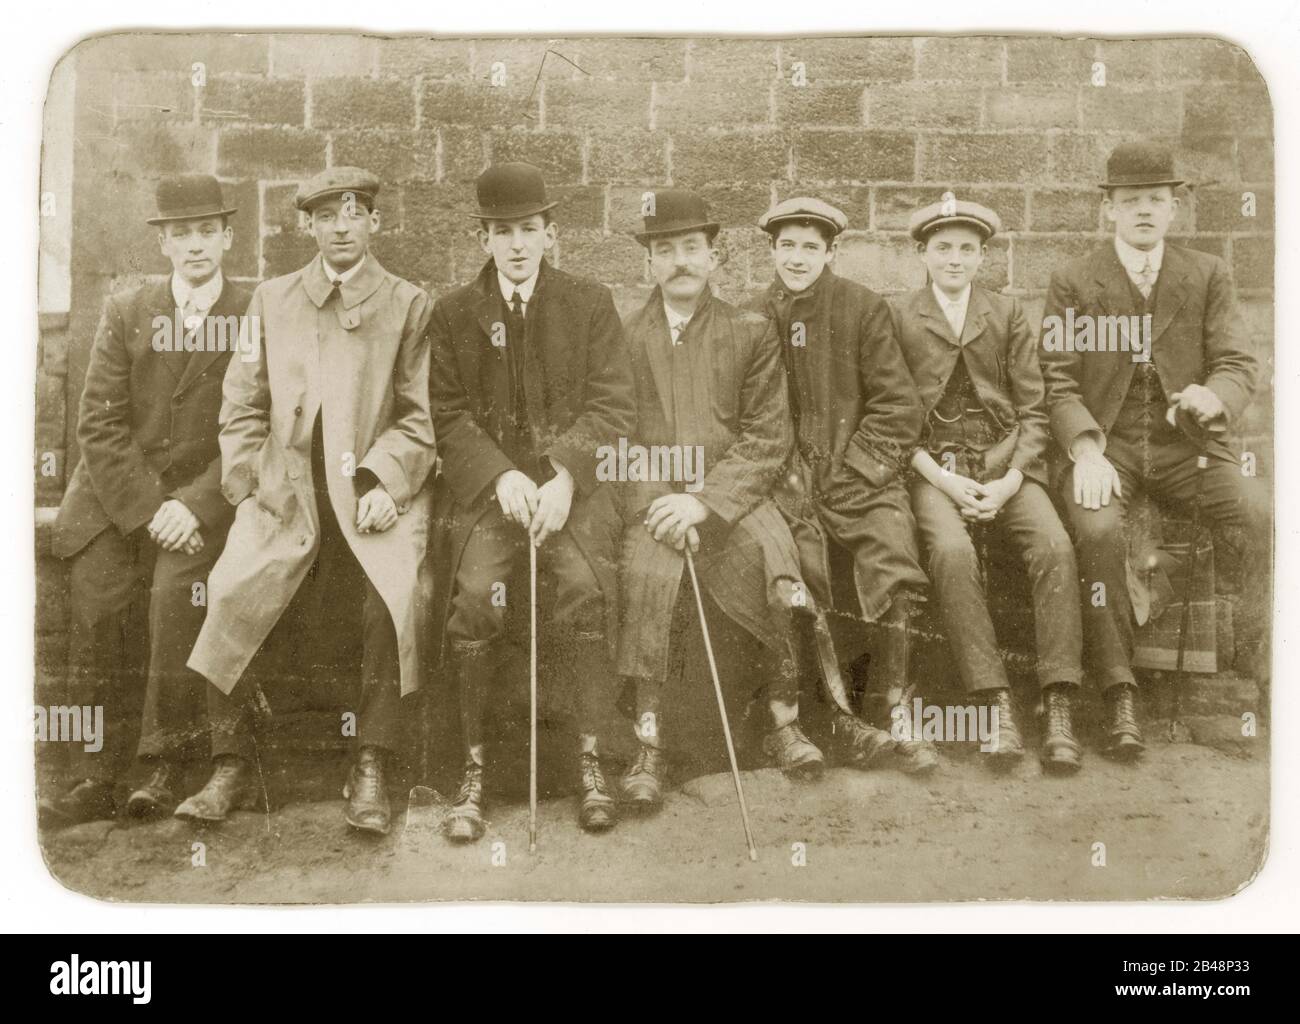 Anfang 1900 wurde die edwardianische Kabinettskarte der Gruppe von sieben jungen Männern und Jungen mit flachen Kappen und Bowler-Hüten, einige mit Wanderstöcken oder -Kähnen, abgerundeten Kragen, die zusammen sitzen, nachdem sie einen Spaziergang auf einer Bank gemacht hatten, Großbritannien Um 1905 Stockfoto